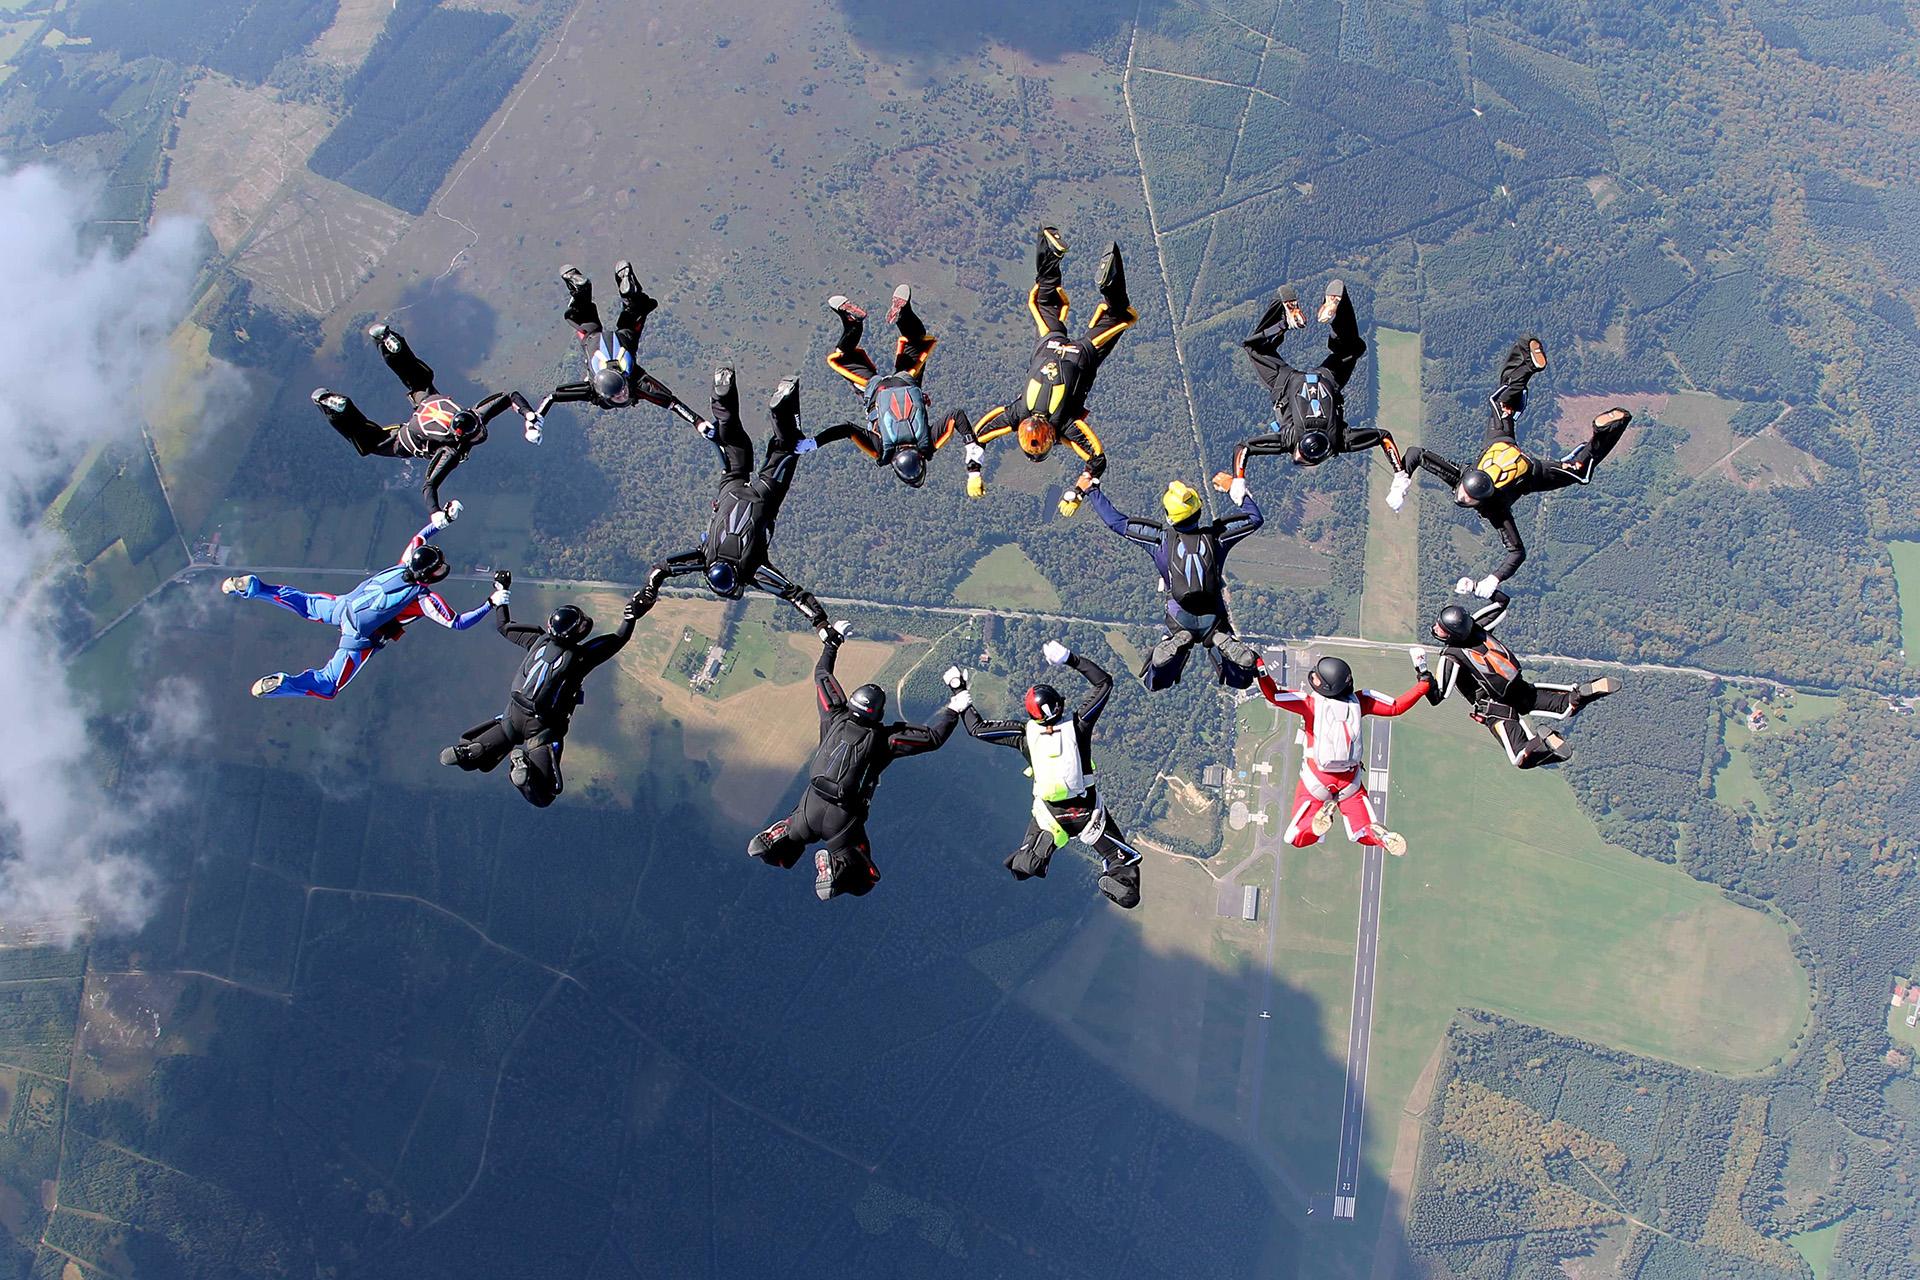 Skydive Spa - Le saut en parachute tandem